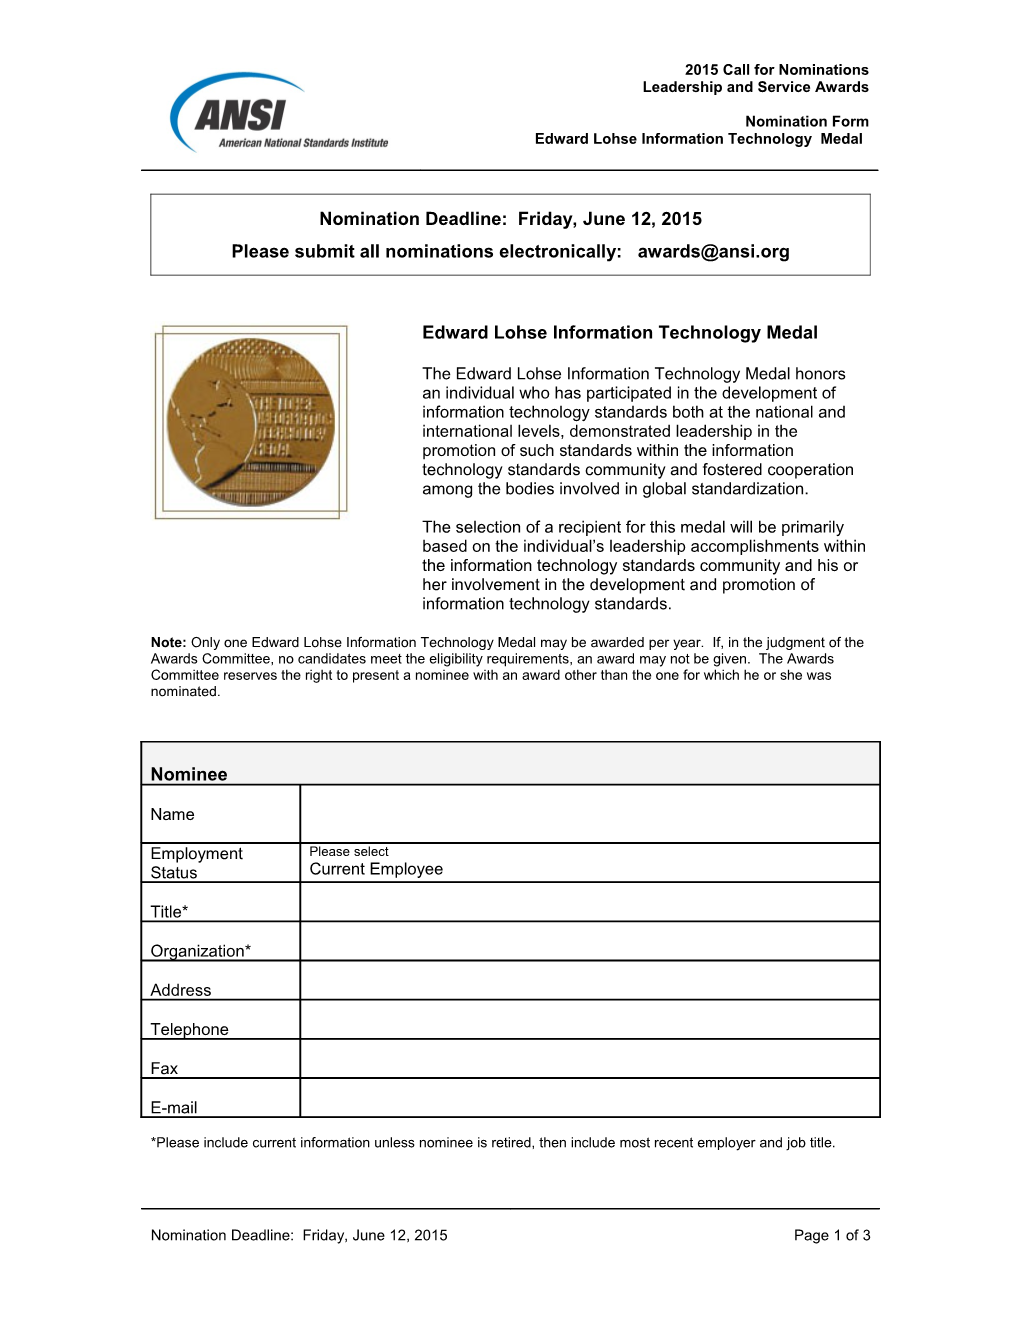 Lohse IT Medal - 2015 Nomination Form